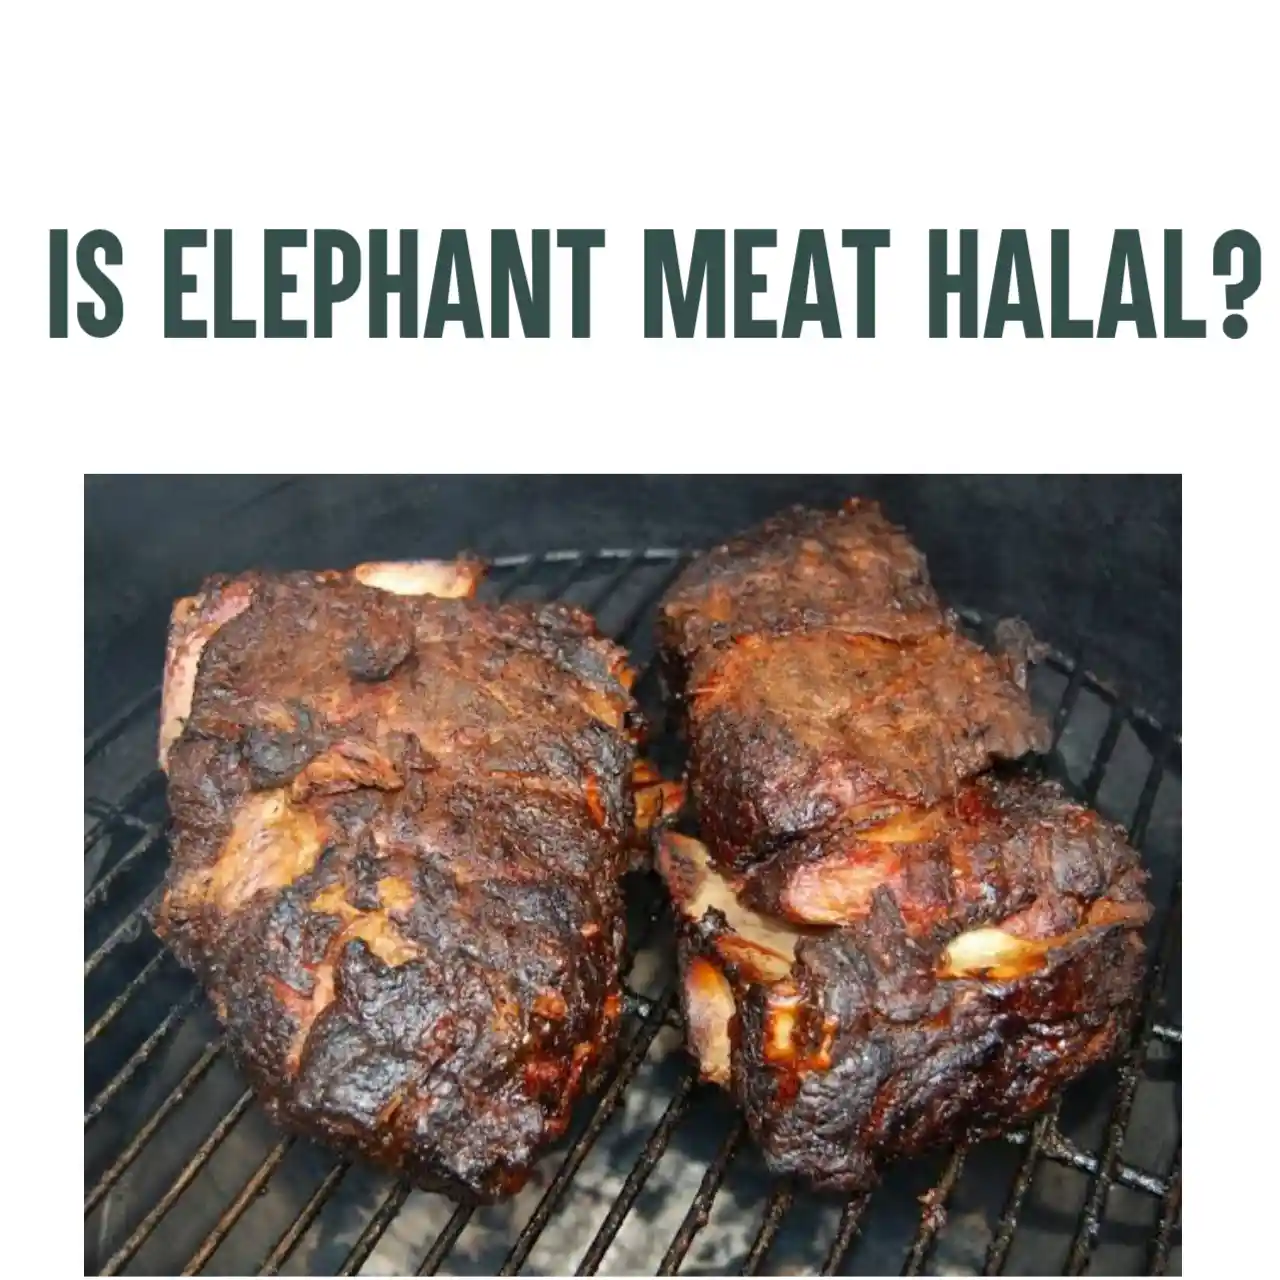 Is Elephant Halal